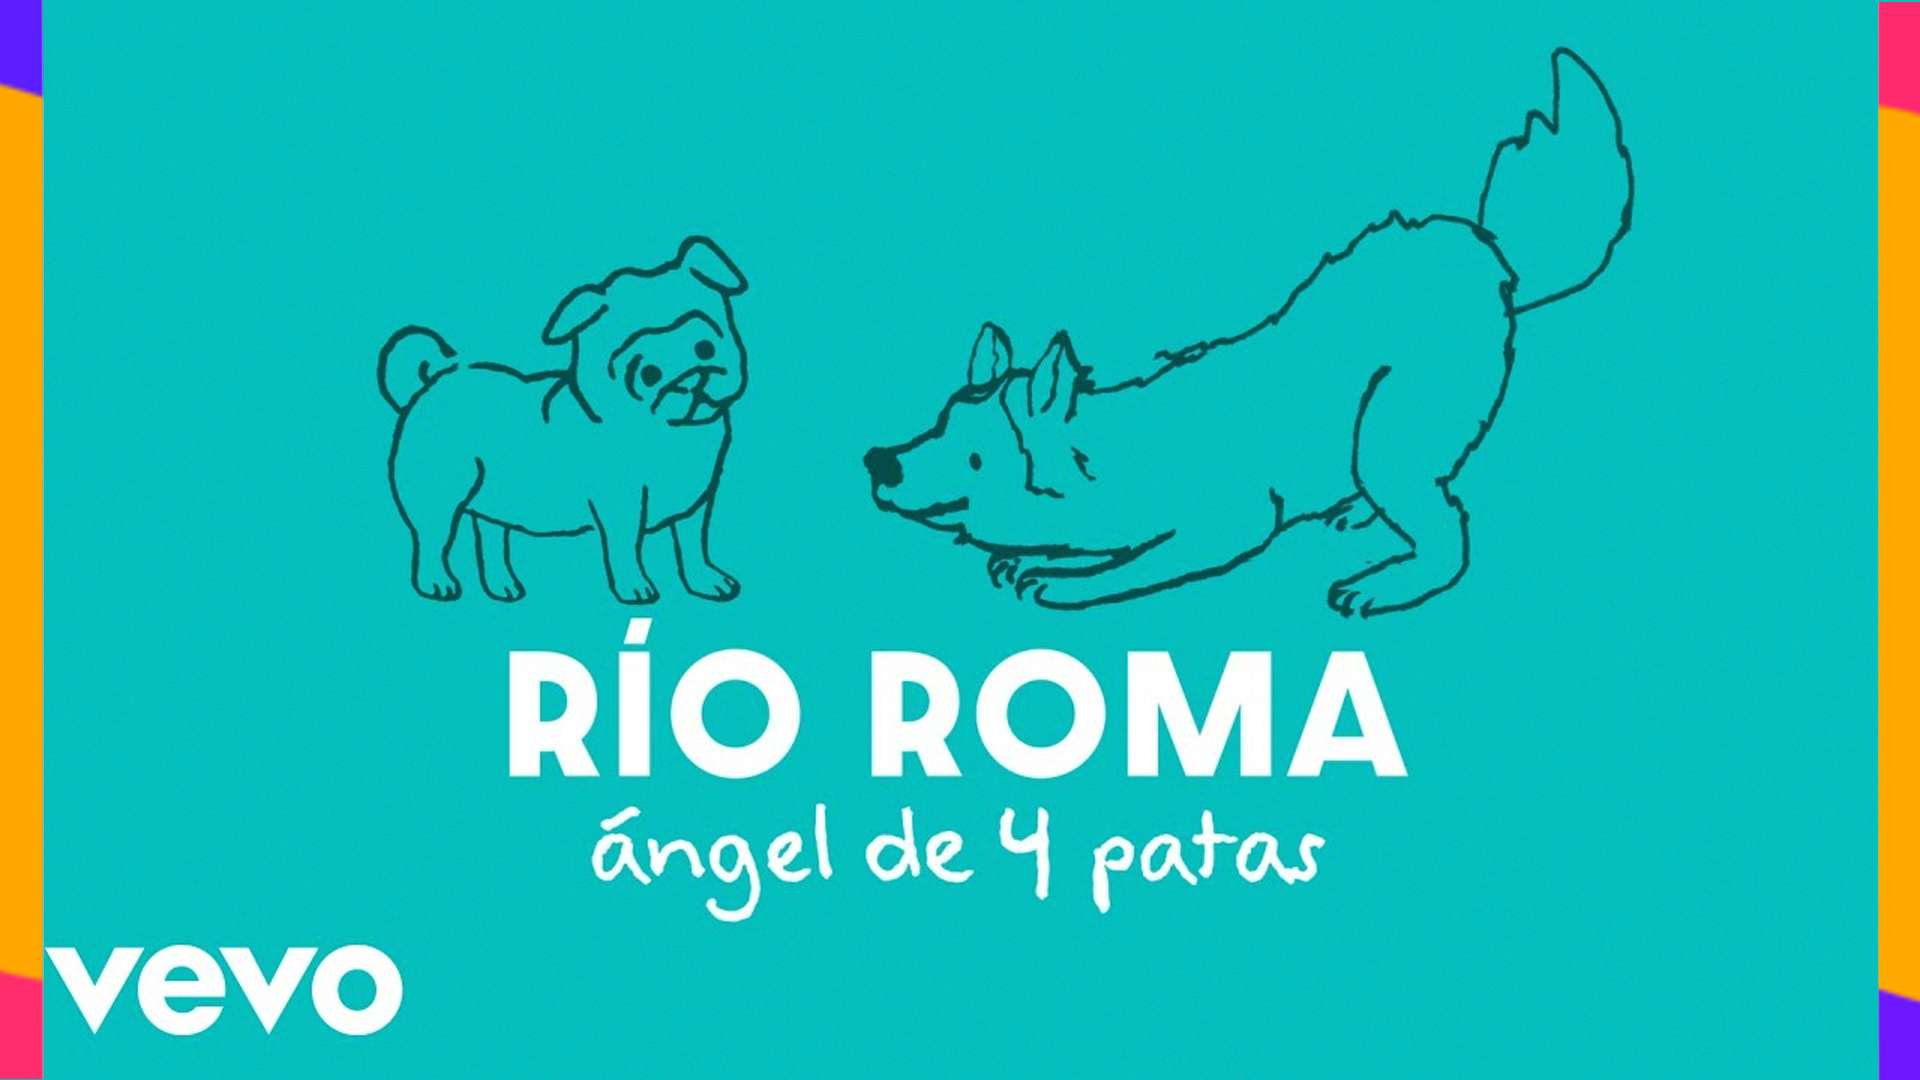 RÍO ROMA derrocha amor por los lomitos en video de su nuevo sencillo “ÁNGEL DE 4 PATAS”